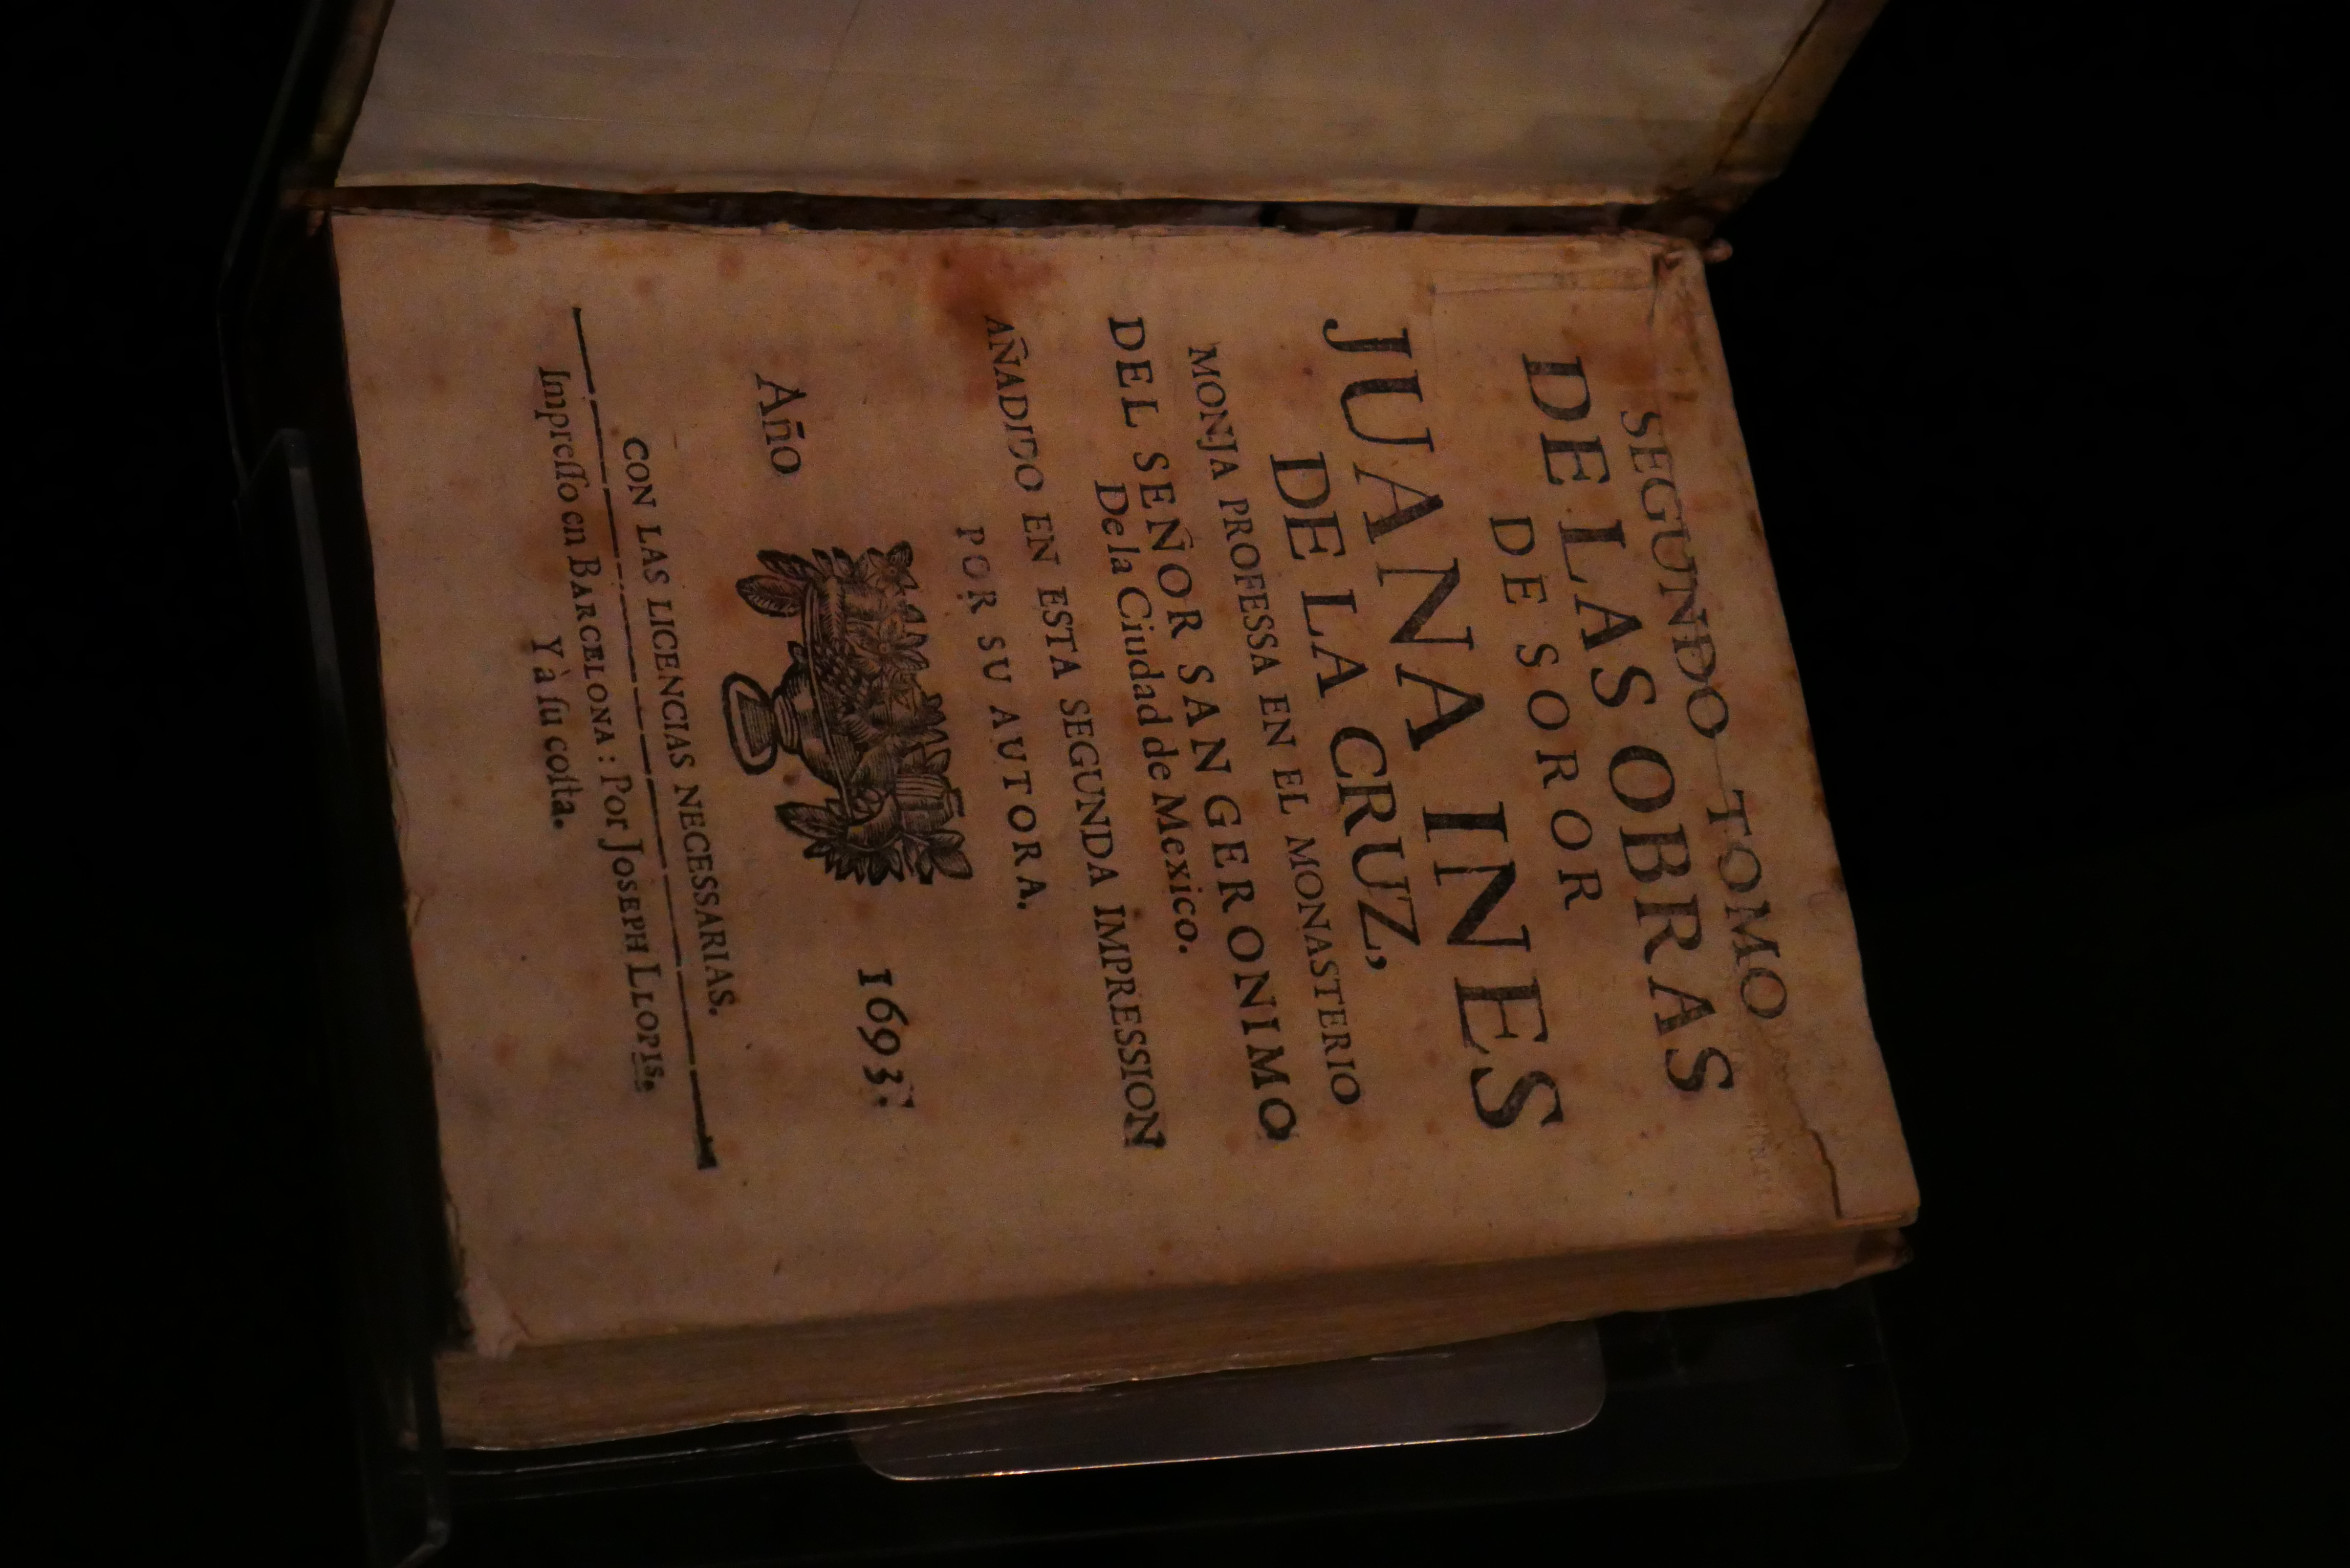 ''Libro de obras poéticas de Sor Juana Inés de la Cruz'' (1693) in het Museo Internacional del Barroco